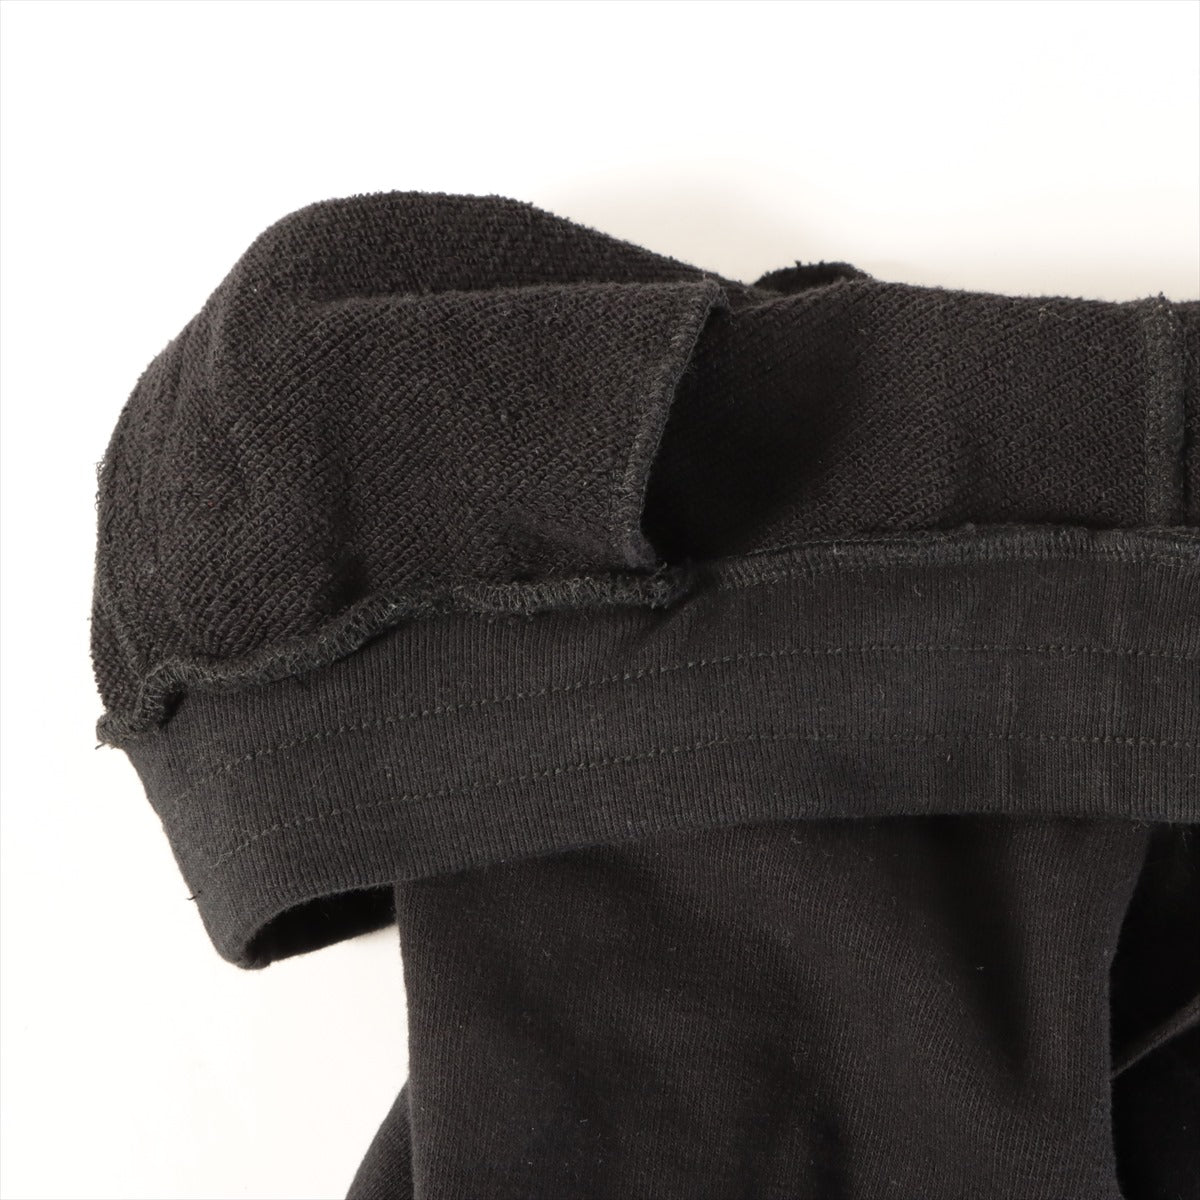 Chrome Hearts Y NOT Sweatpants Cotton & polyurethane size L Black  Dagger zip Leather patches Shorts